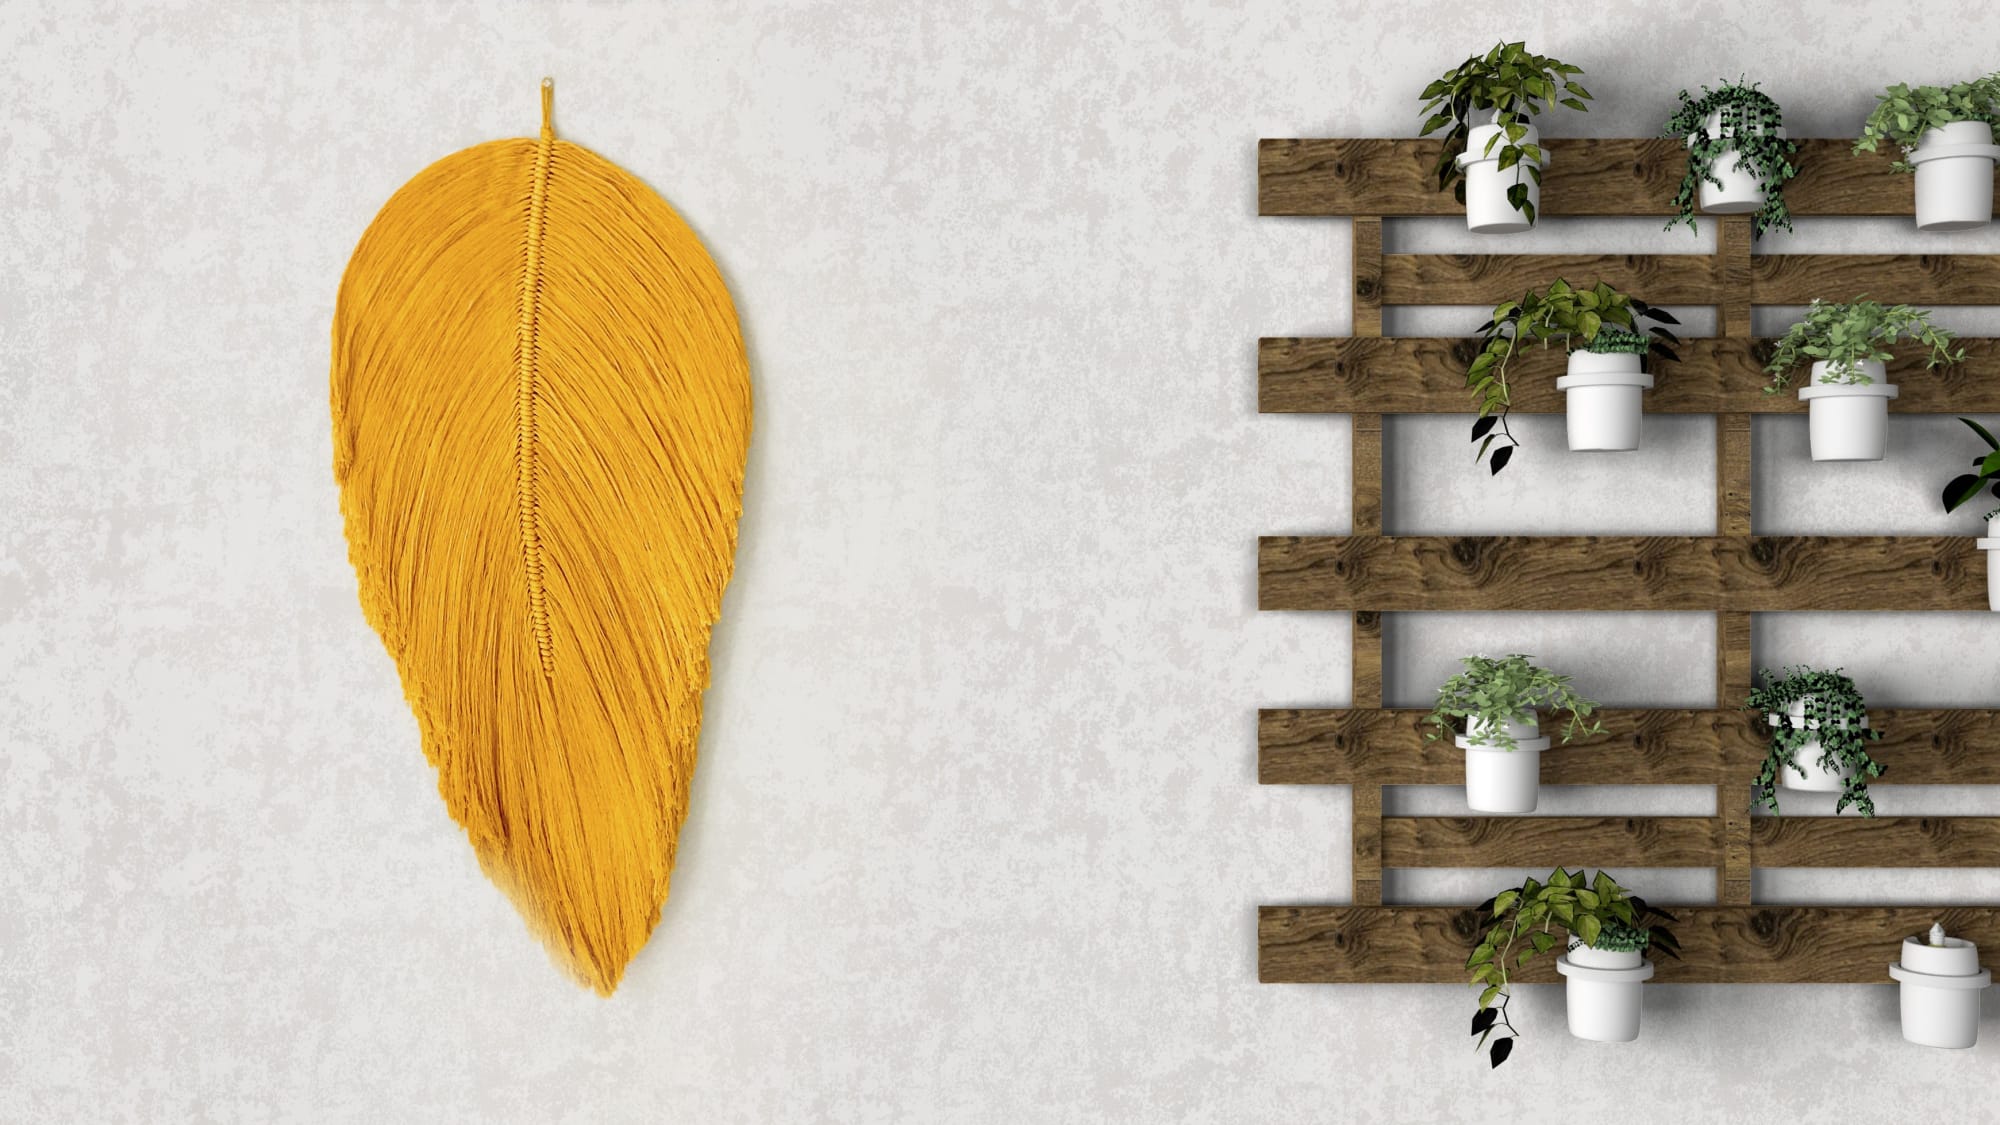 Macrames Leaves Wall Hanging Kit - Sage Green, Mustard Yellow and Natural